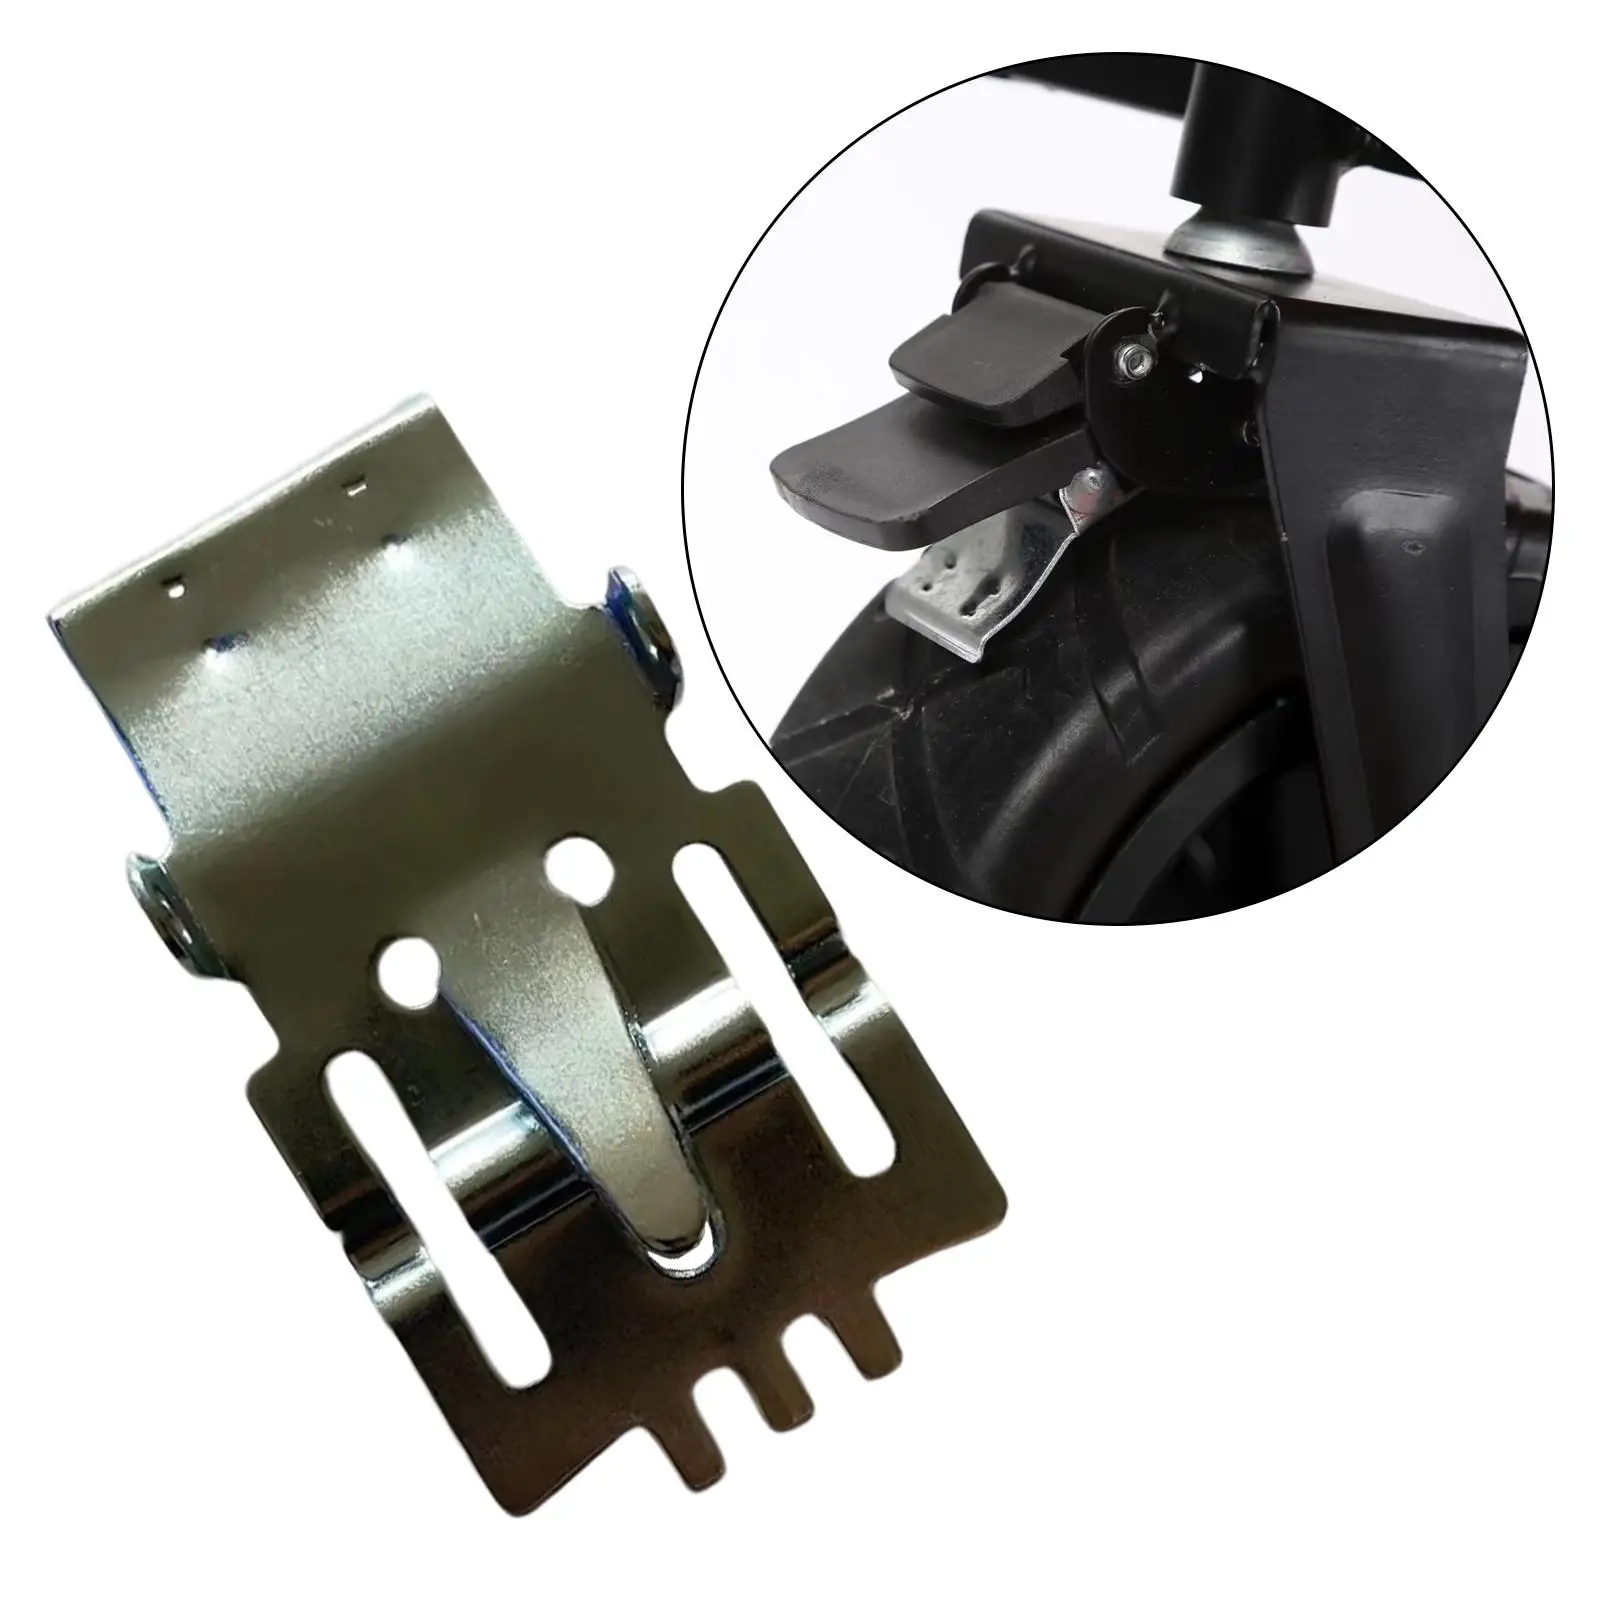 Metal Shopping Trolleys Brake Pad Braking Holder Repair Wagon Locking Pad Parts Durable Accessories Replace